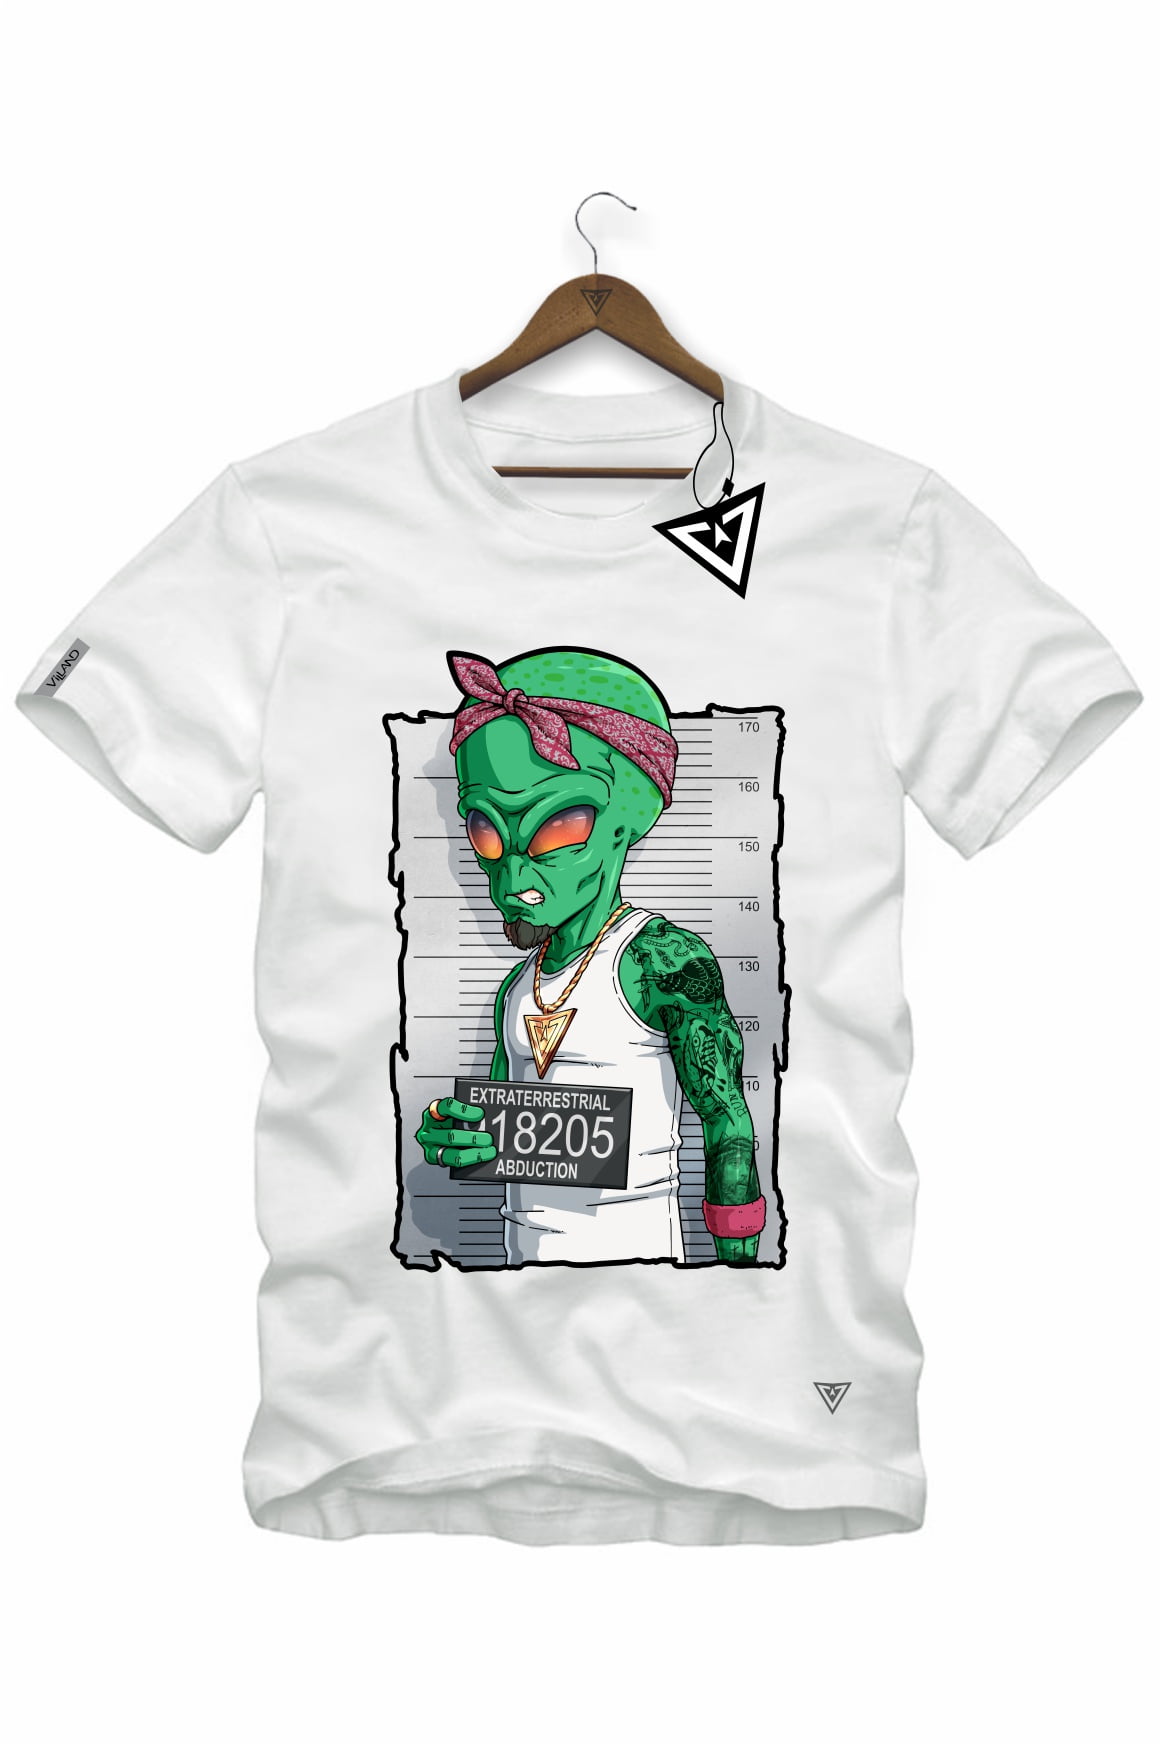 Camiseta masculina Alien Pizza Extraterrestre Desenho Camisa Blusa Branca  Estampada em Promoção na Americanas